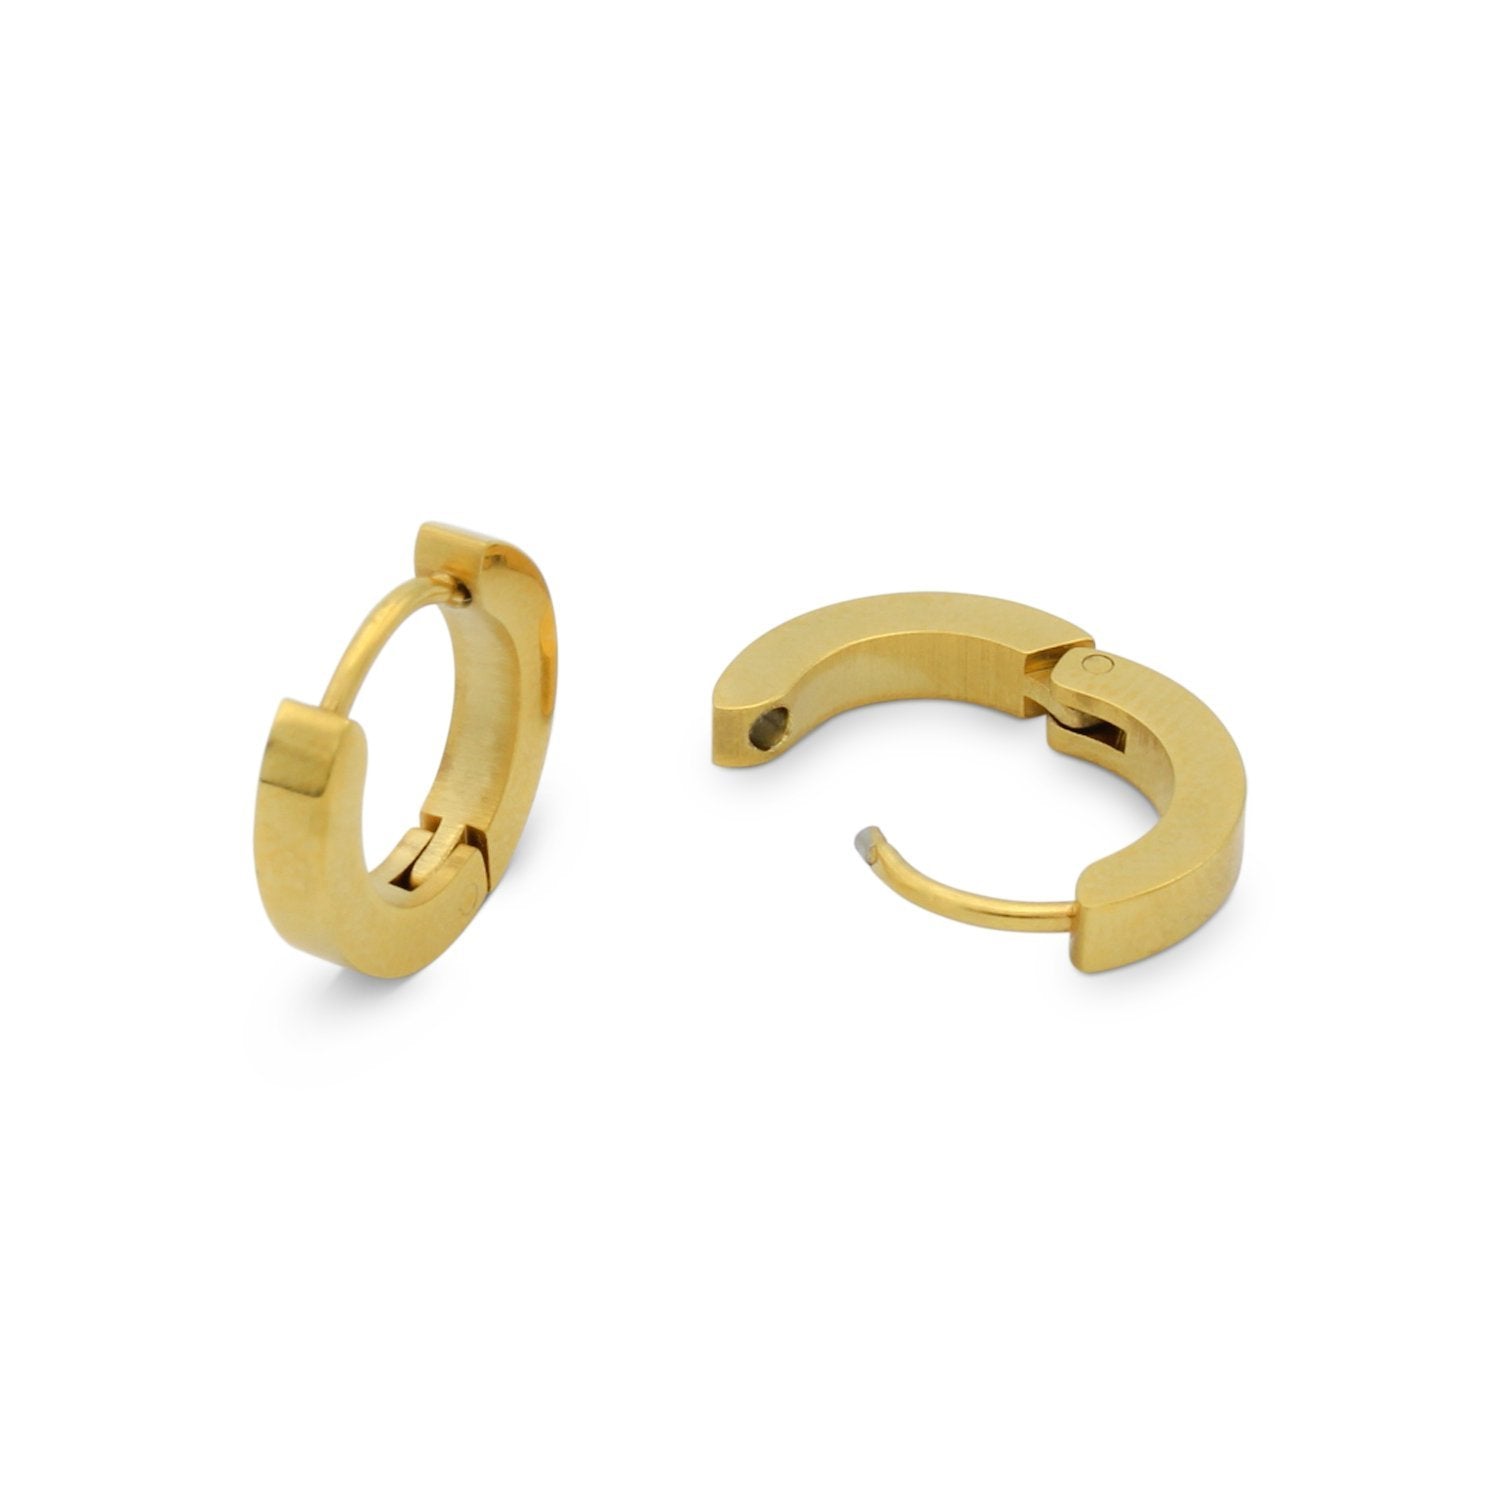 Share 125+ plain gold huggie earrings latest